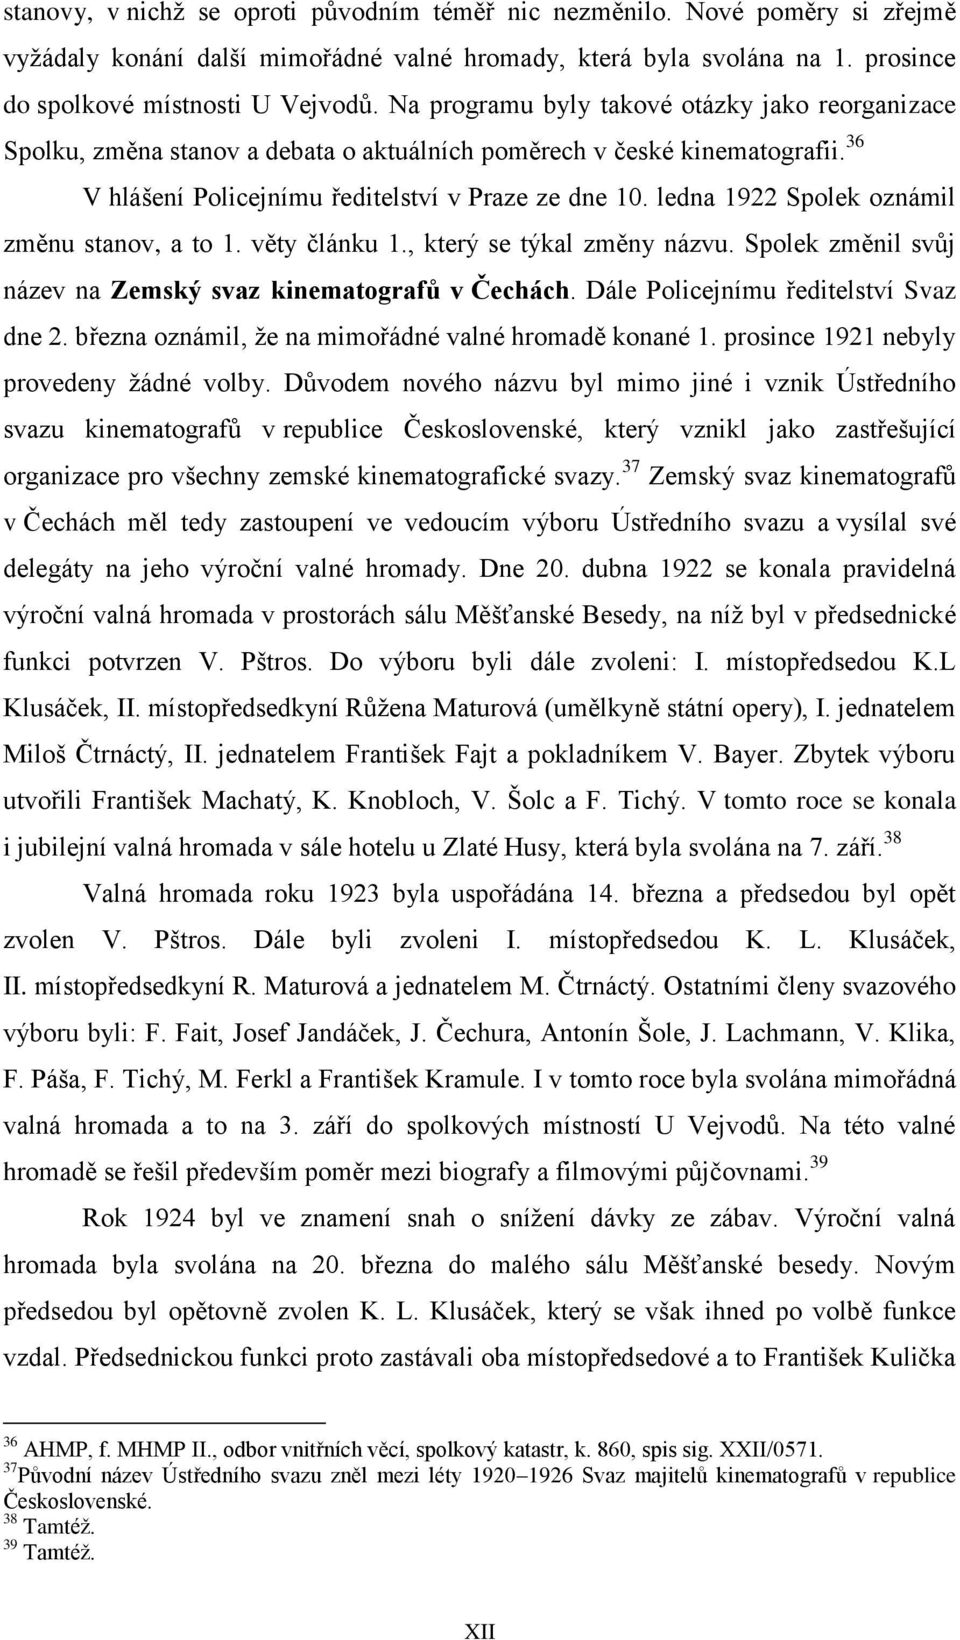 ledna 1922 Spolek oznámil změnu stanov, a to 1. věty článku 1., který se týkal změny názvu. Spolek změnil svůj název na Zemský svaz kinematografů v Čechách. Dále Policejnímu ředitelství Svaz dne 2.